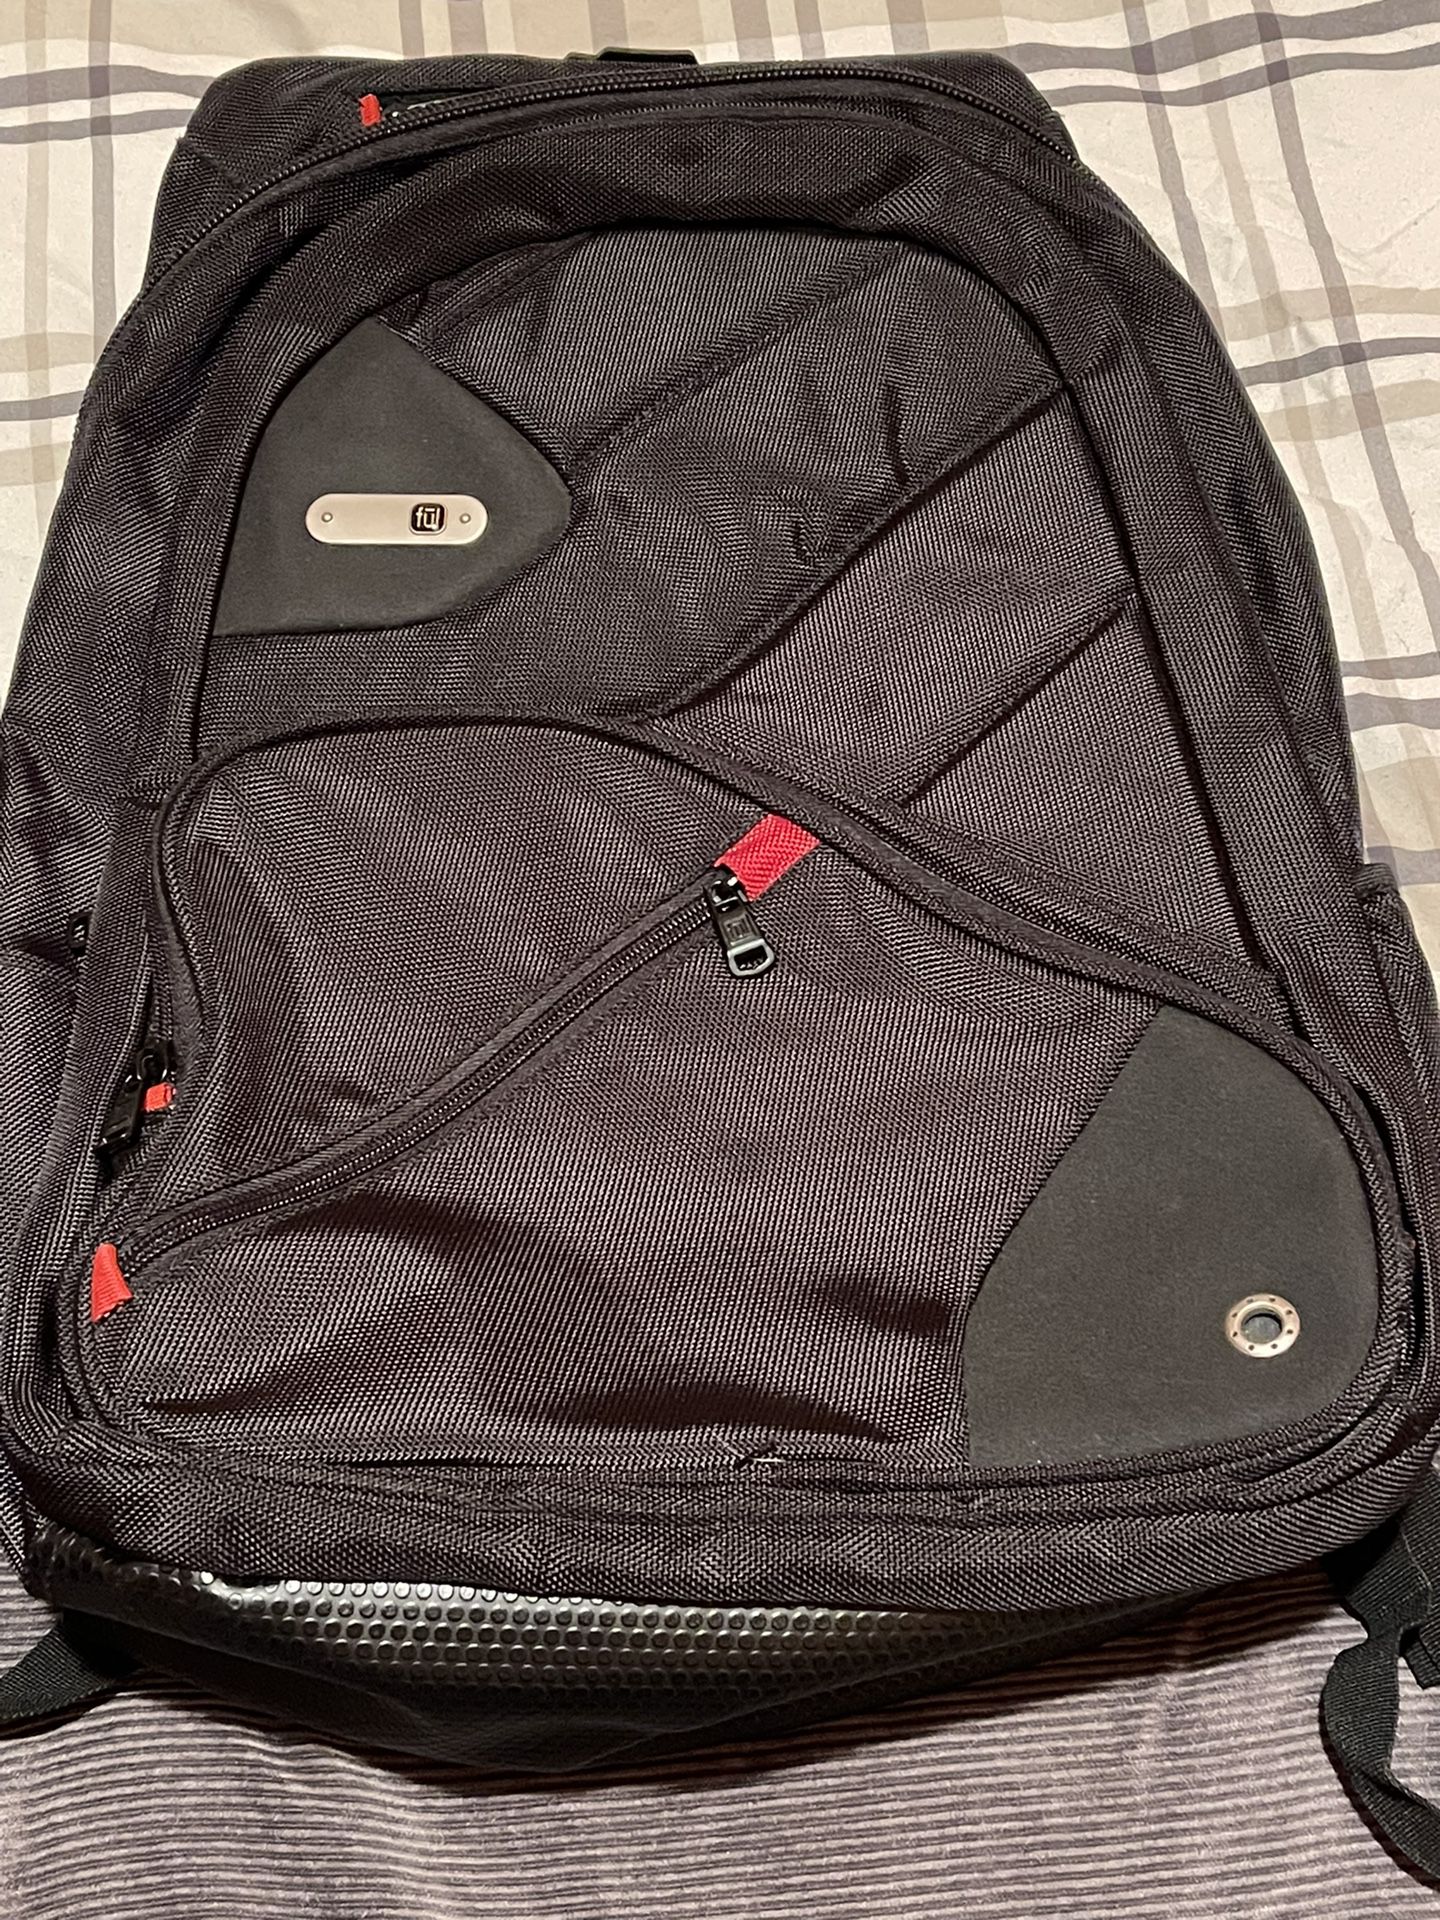 Ful Backpack